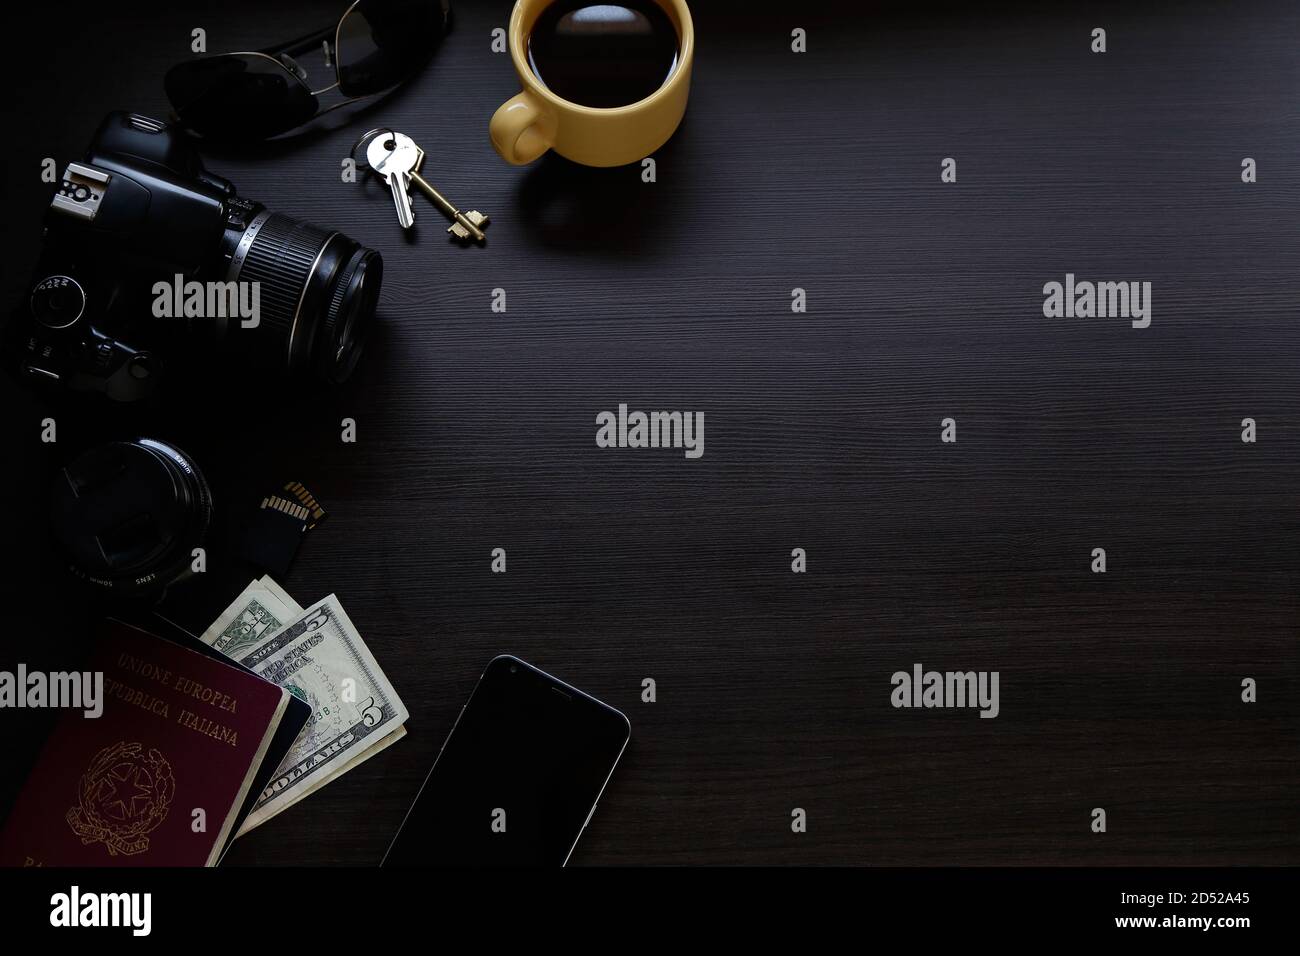 Vista dall'alto della scrivania in legno scuro con fotocamera digitale reflex, uno smartphone, passaporto, chiavi, caffè e denaro. Spazio di copia. Foto Stock